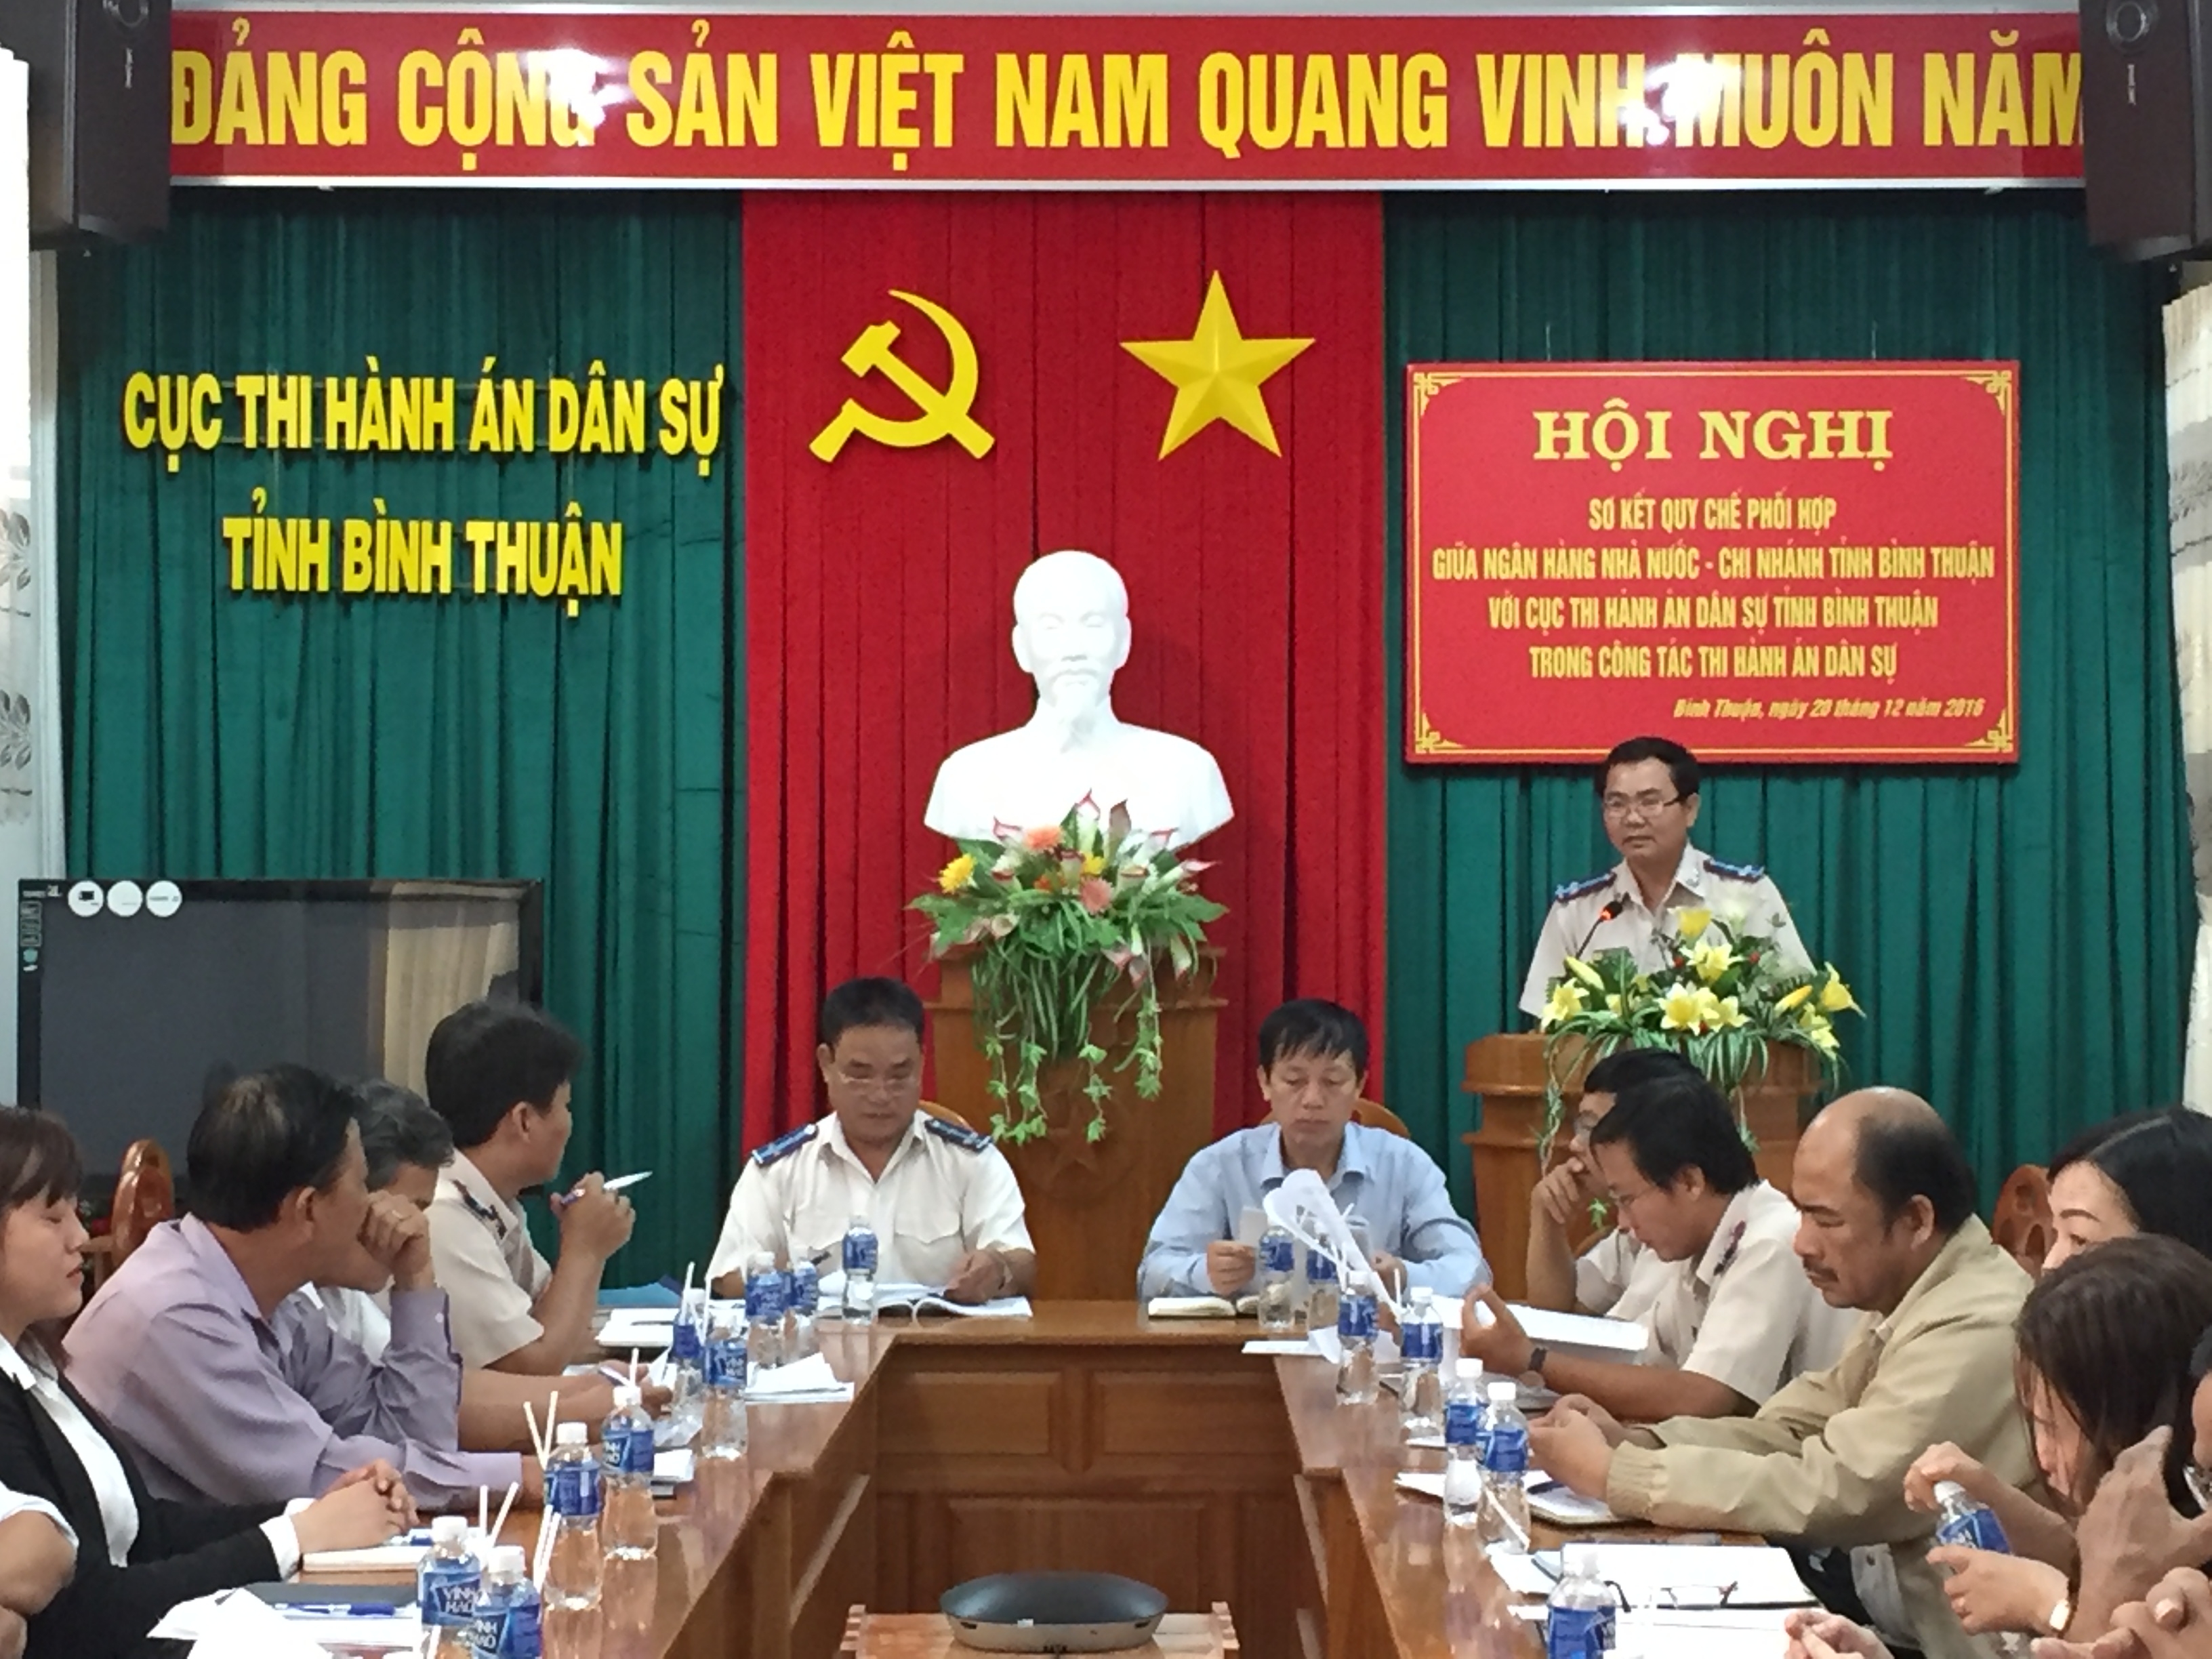 Hội nghị sơ kết Quy chế phối hợp giữa Ngân hàng Nhà nước- chi nhánh Bình Thuận với Cục Thi hành án dân sự tỉnh Bình Thuận trong công tác Thi hành án dân sự